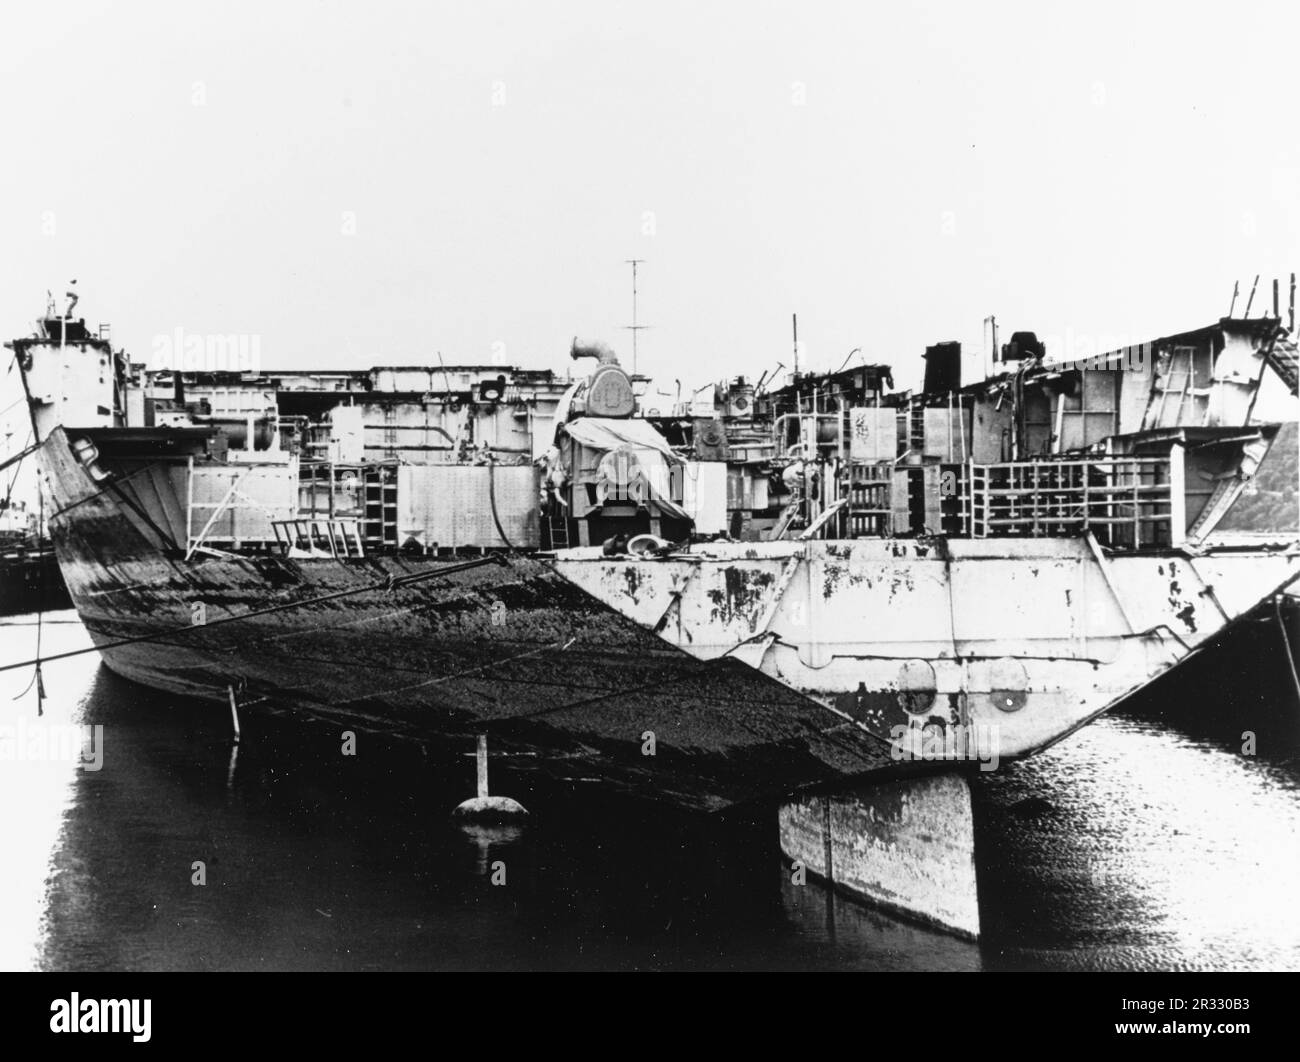 Das US-amerikanische Luftfahrtunternehmen der Essex-Klasse USS Bunker Hill (CV-17) wurde im April 1973 in Tacoma teilweise abgewrackt. Das Schiff wurde am 11. Mai 1945 in Okinawa durch zwei Kamikaze-Angriffe in einer Minute schwer beschädigt. Er griff voll betankt und bewaffnete Flugzeuge an Deck an und löste sehr gefährliche Brände aus. Obwohl das Schiff schwer beschädigt war, ging es nicht unter und kehrte zur Reparatur in die USA zurück. Das Schiff wurde 1966 stillgelegt und 1973 verschrottet. Stockfoto